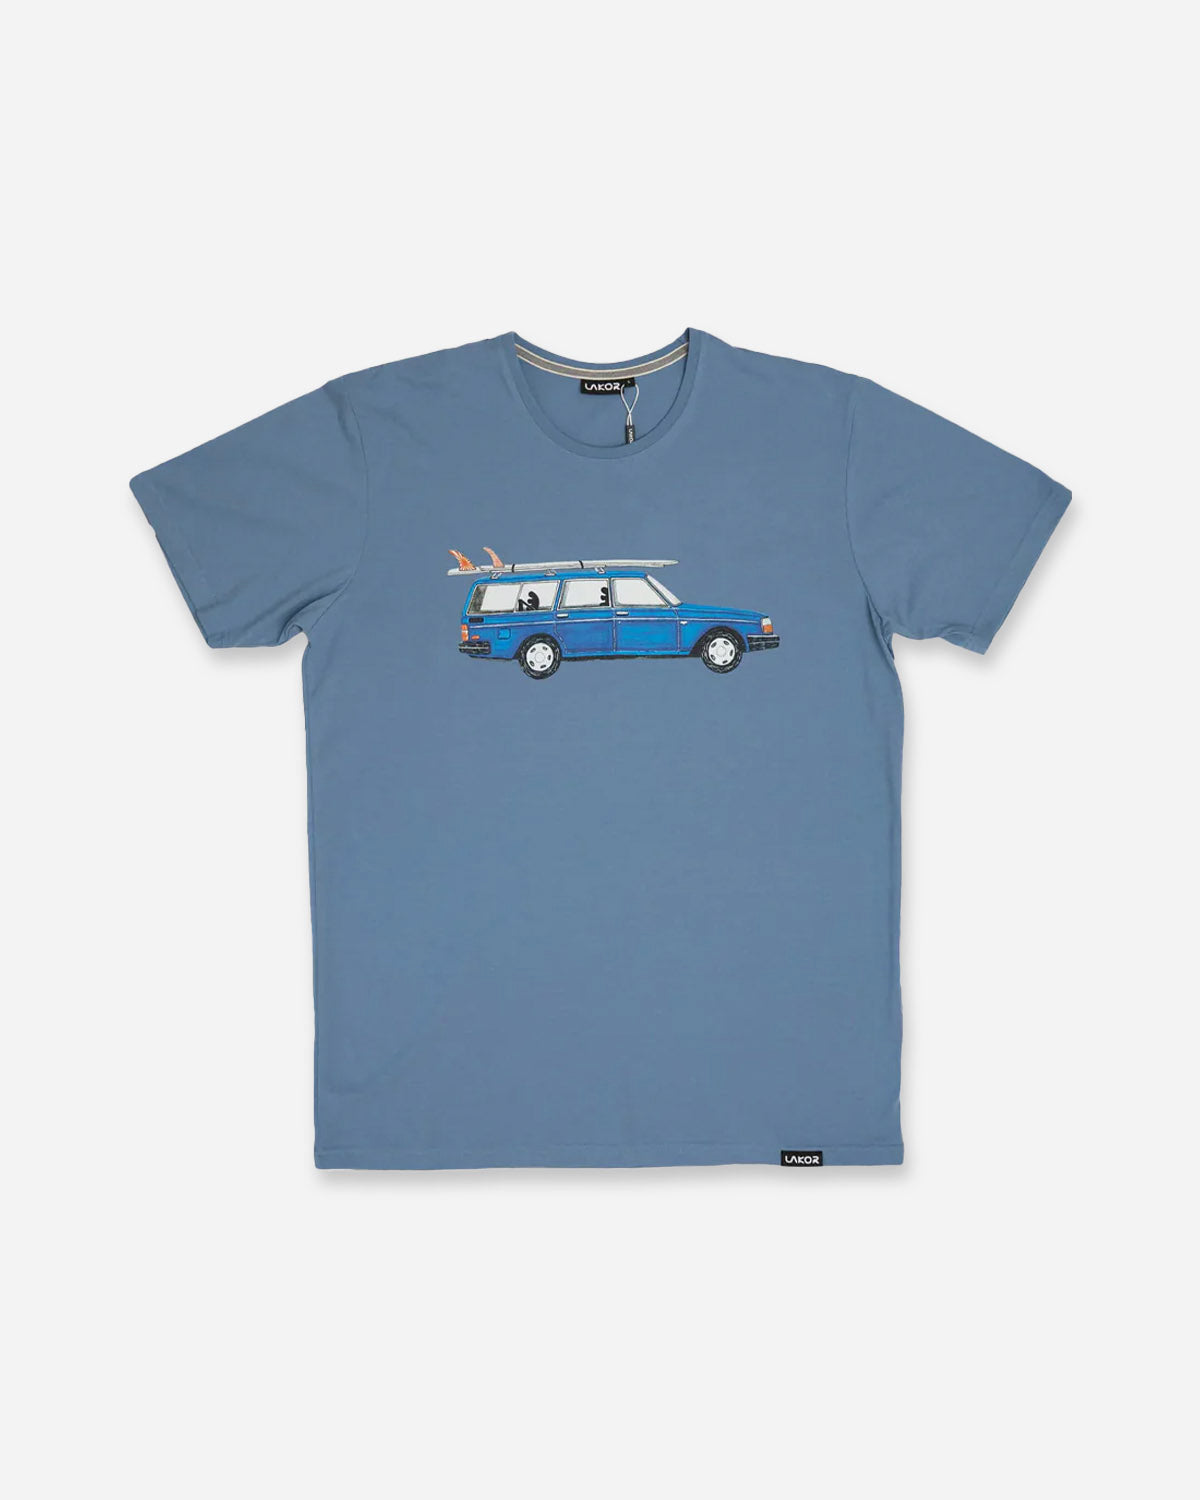 Getaway Car T-shirt - Light Blue